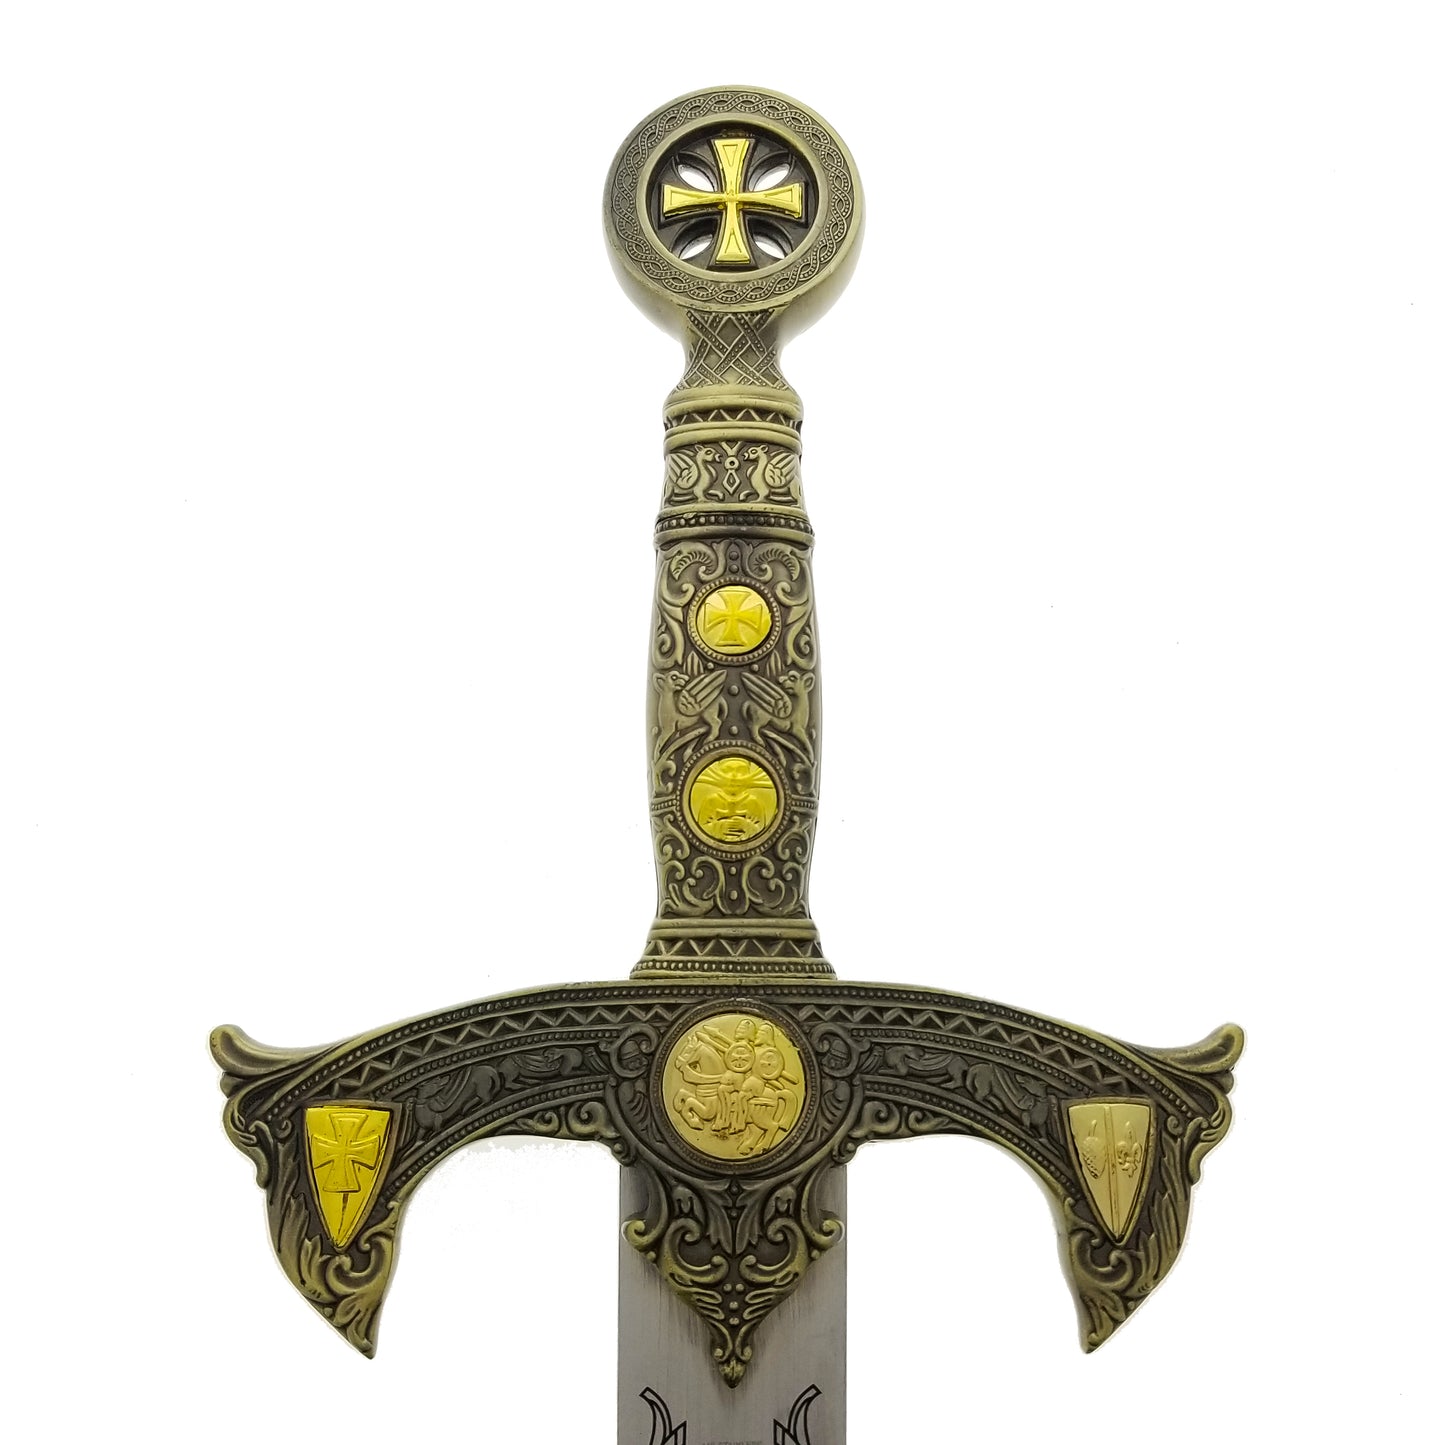 47" Knights of Templar Sword